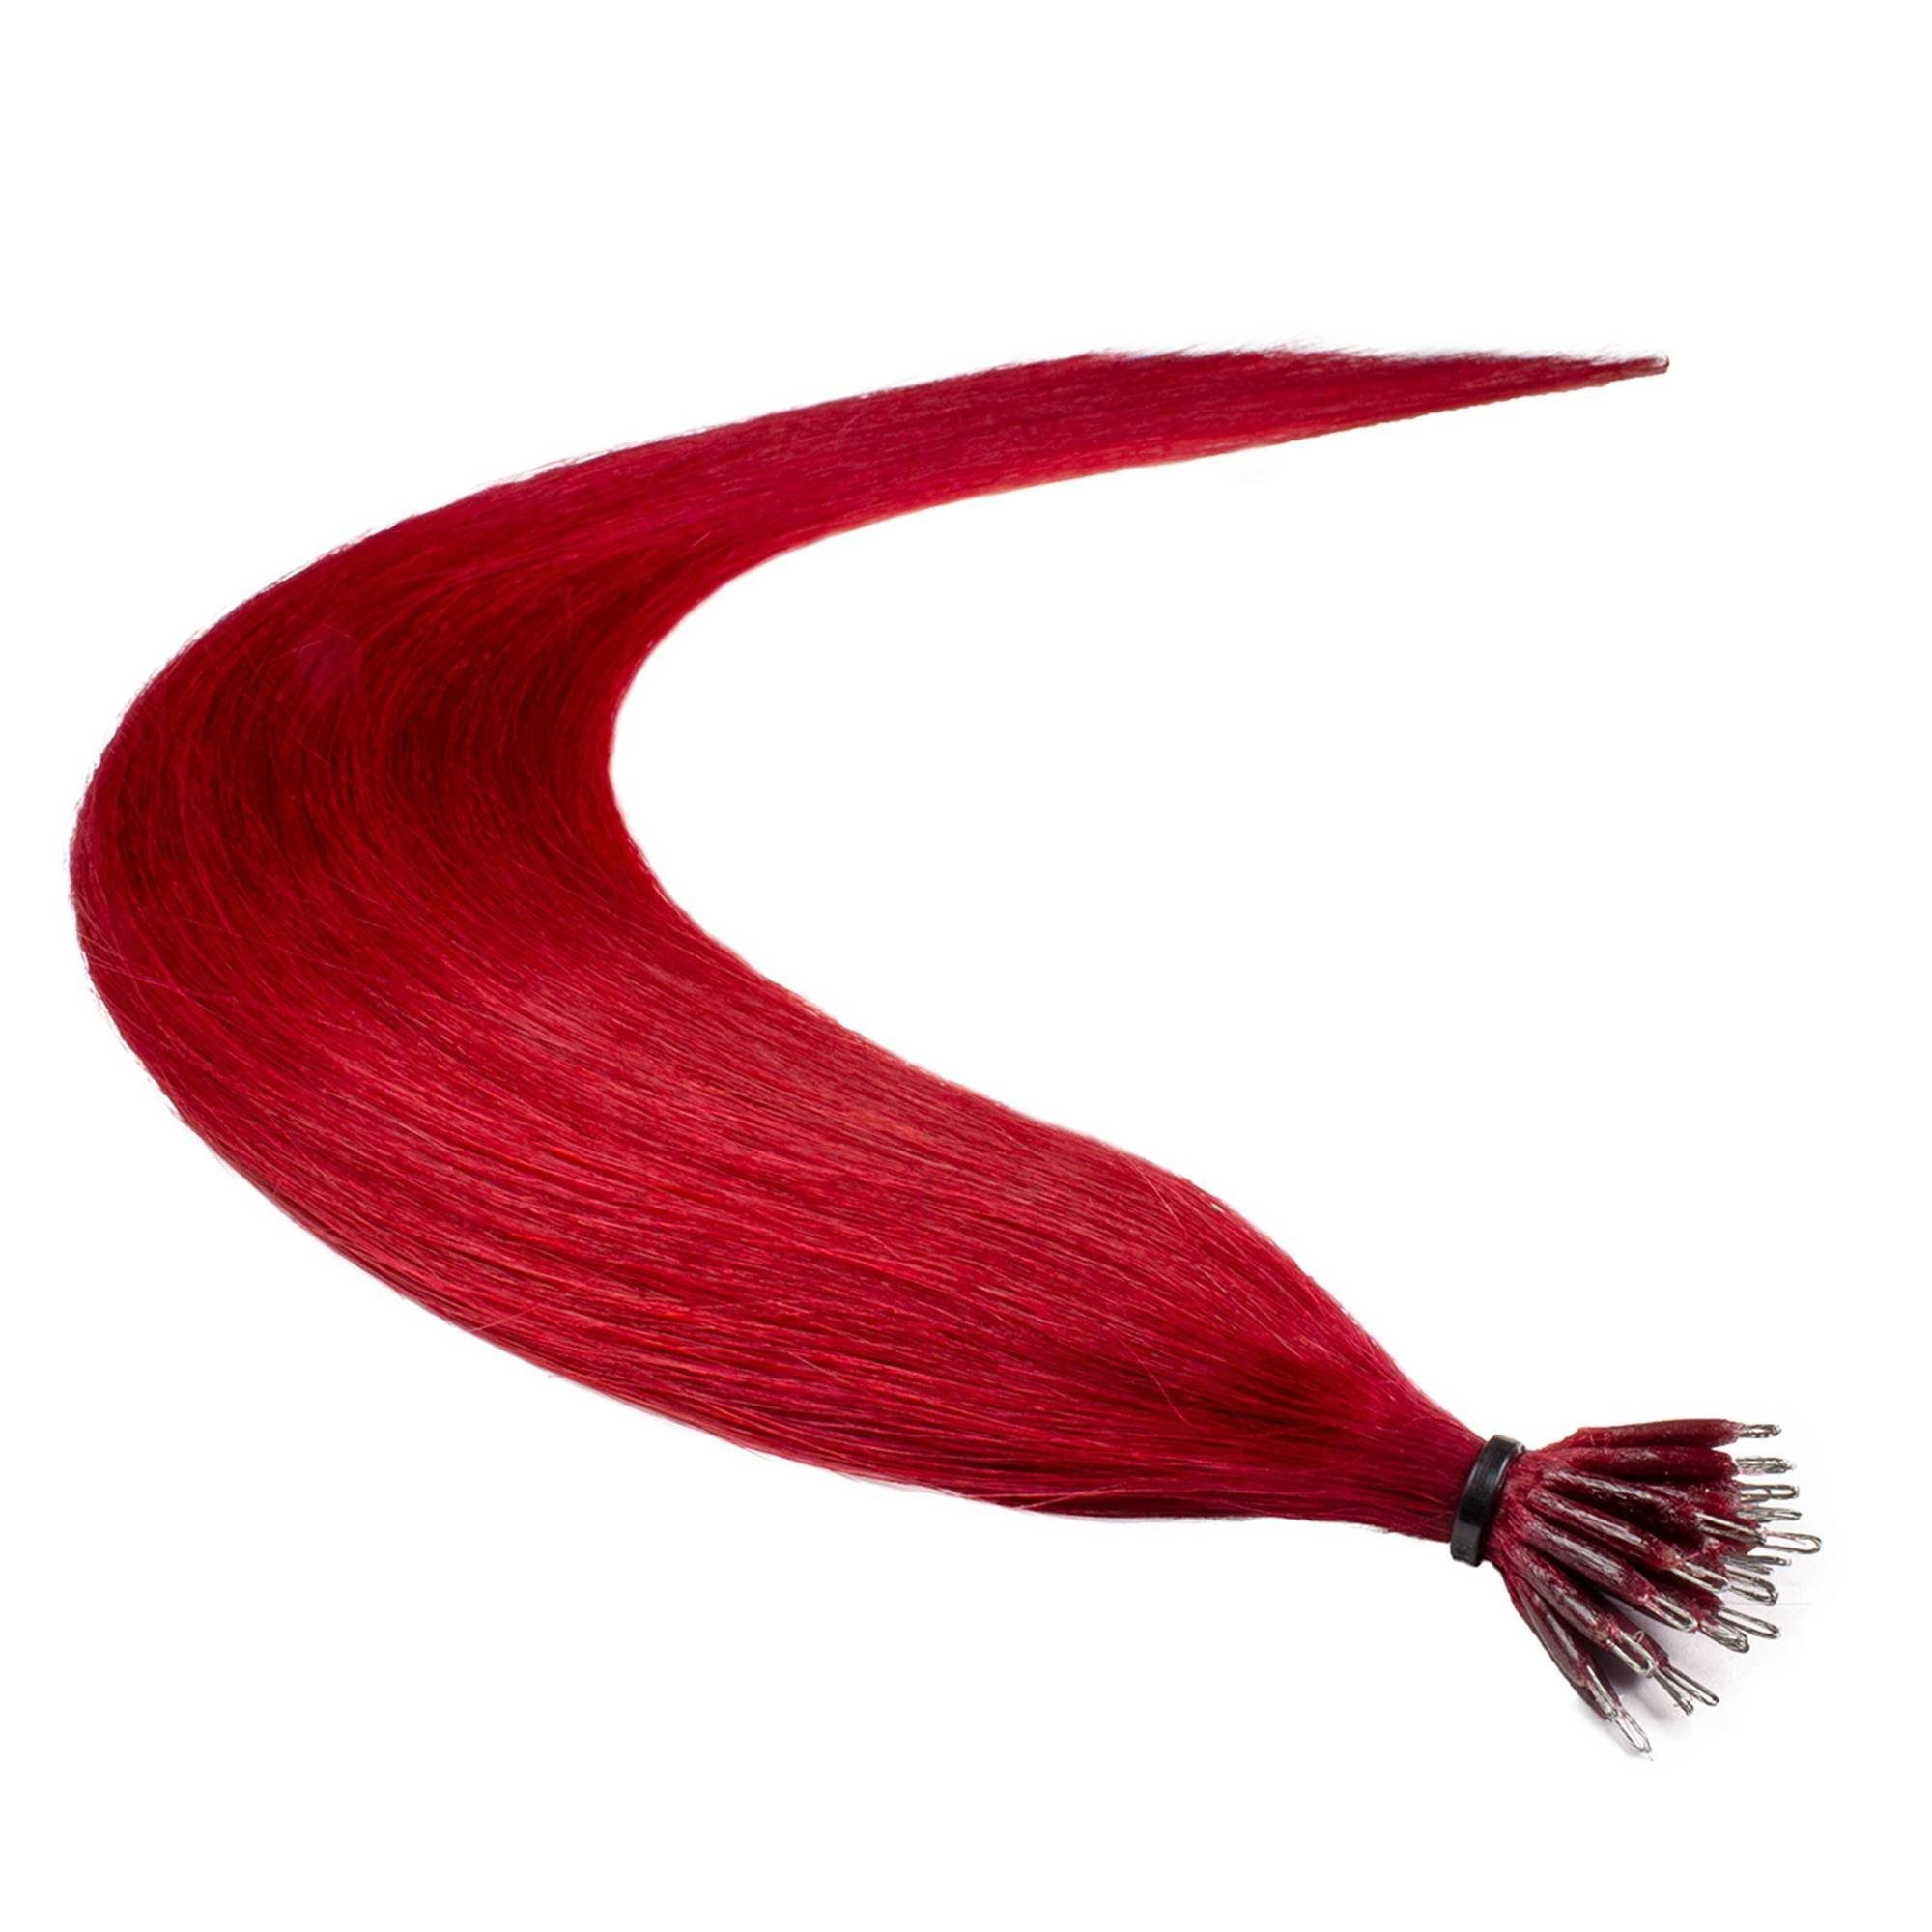 Echthaar-Extension Premium Rot-Intensiv 40cm #0/44 Nanoring hair2heart Extensions